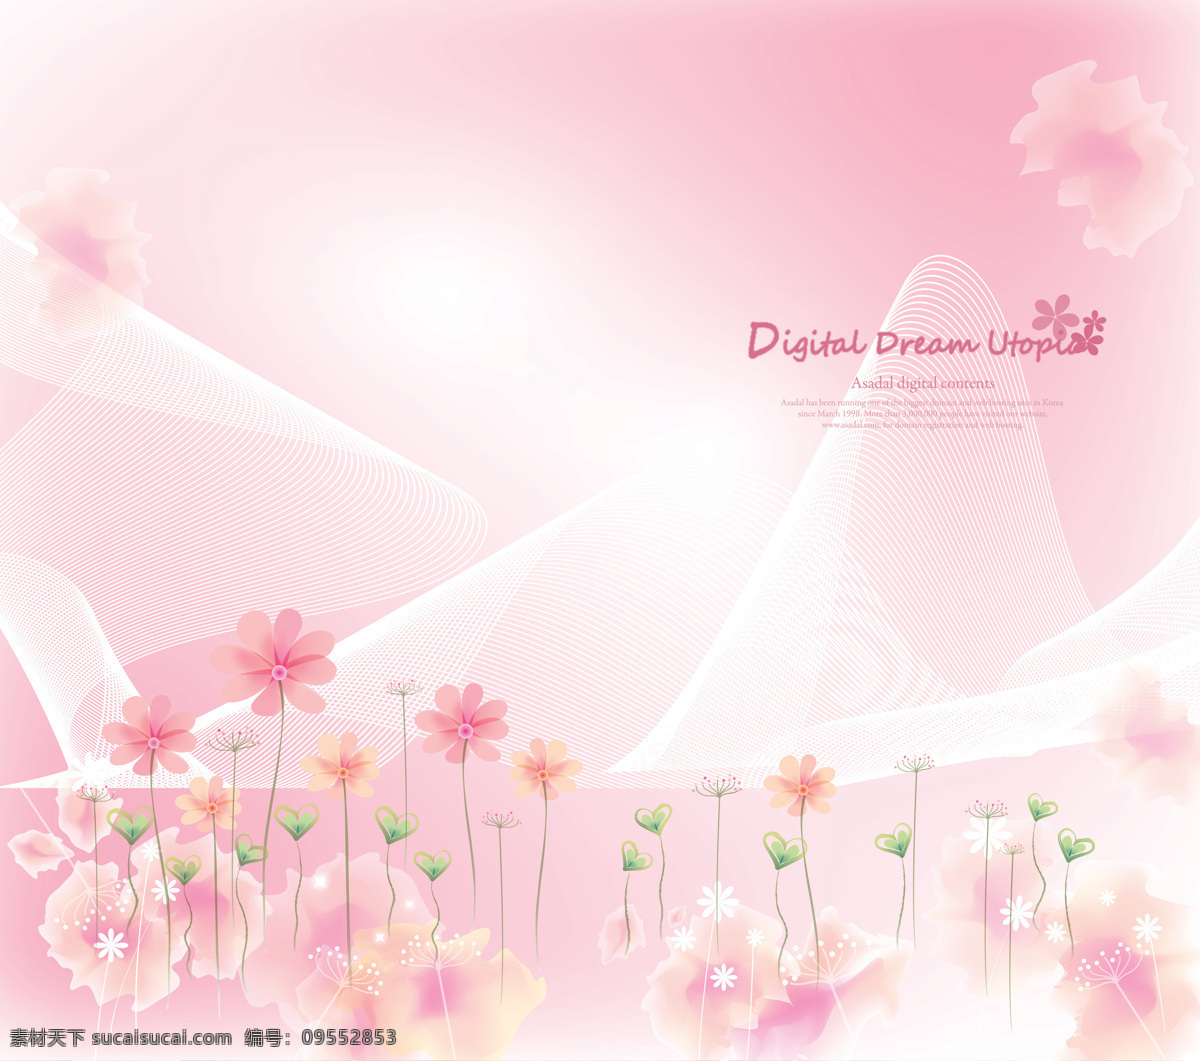 浪漫背景 花朵 小花 花瓣 曲线 透明花 粉色背景 装饰背景 移门 设计素材 移门图案 底纹边框